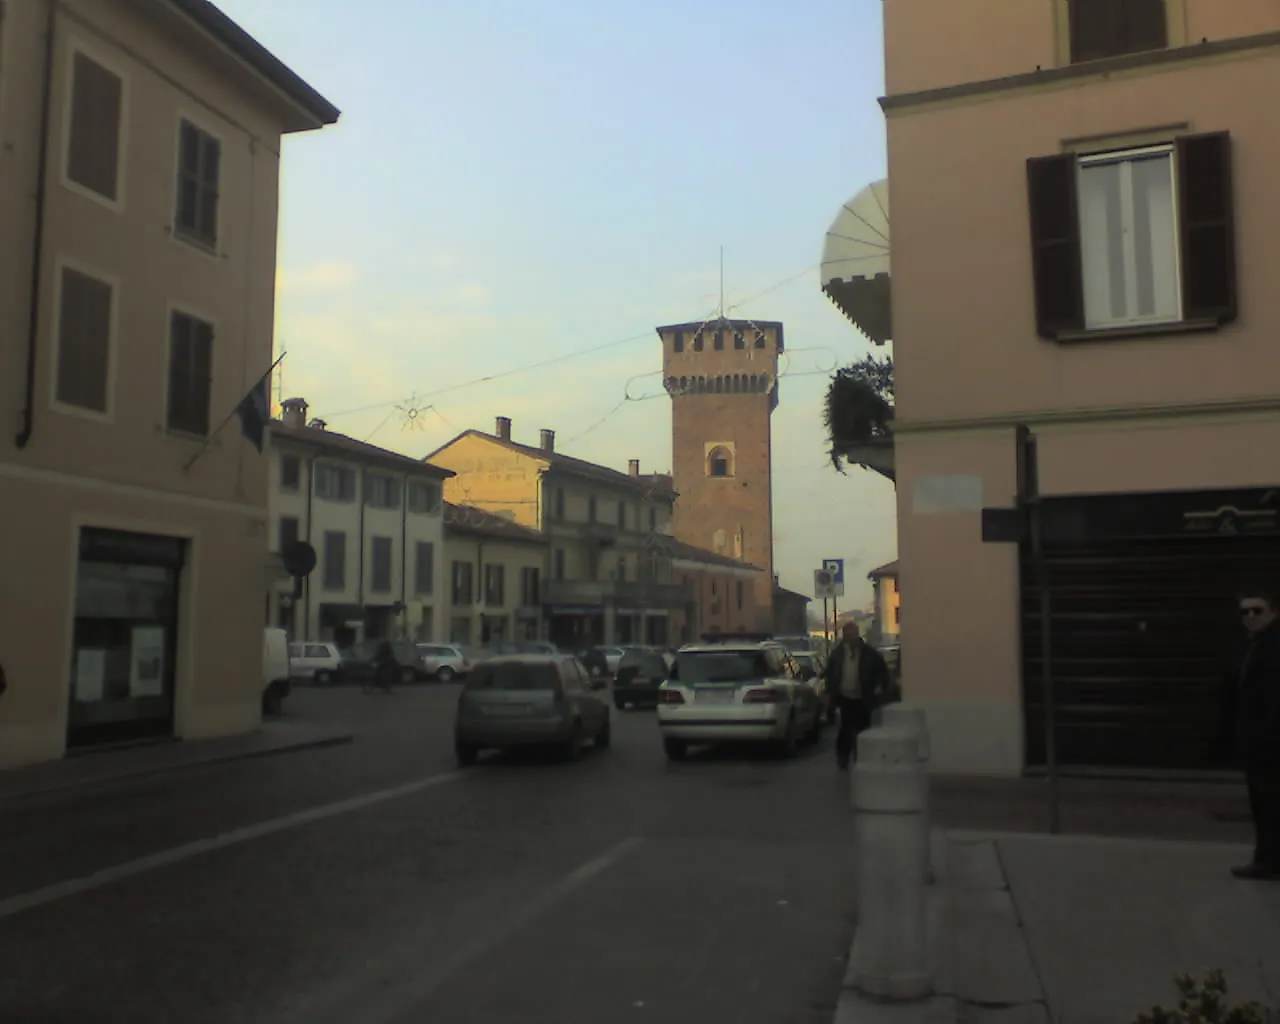 Photo showing: Original caption from it.wiki: "Scorcio di Piazza libertà a Sant'Angelo Lodigiano, scattata dall'utente Deplo."